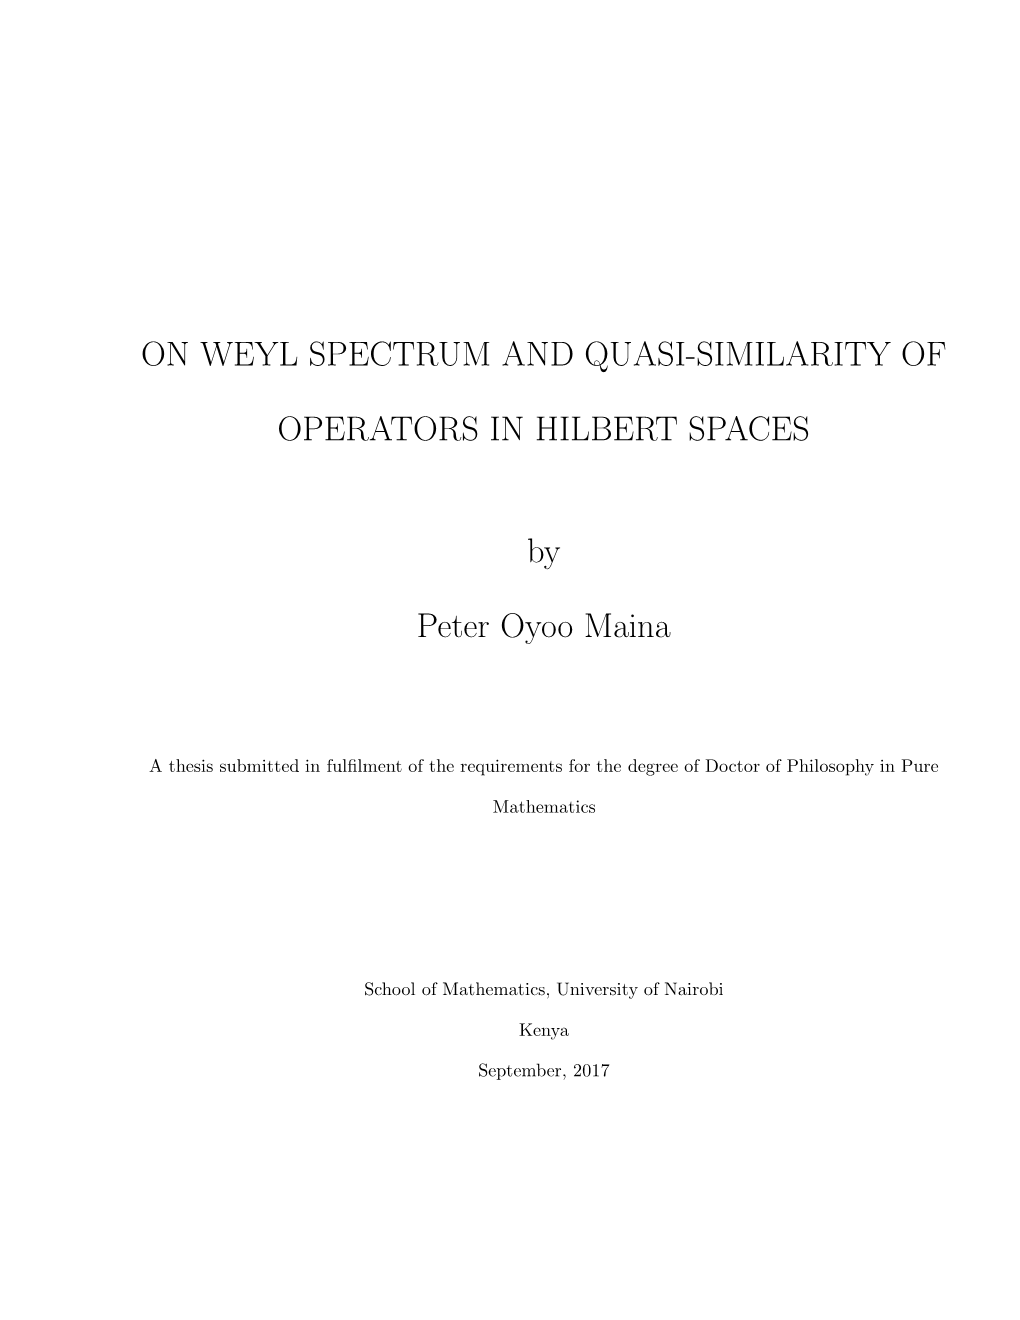 On Weyl Spectrum and Quasi-Similarity of Operators In